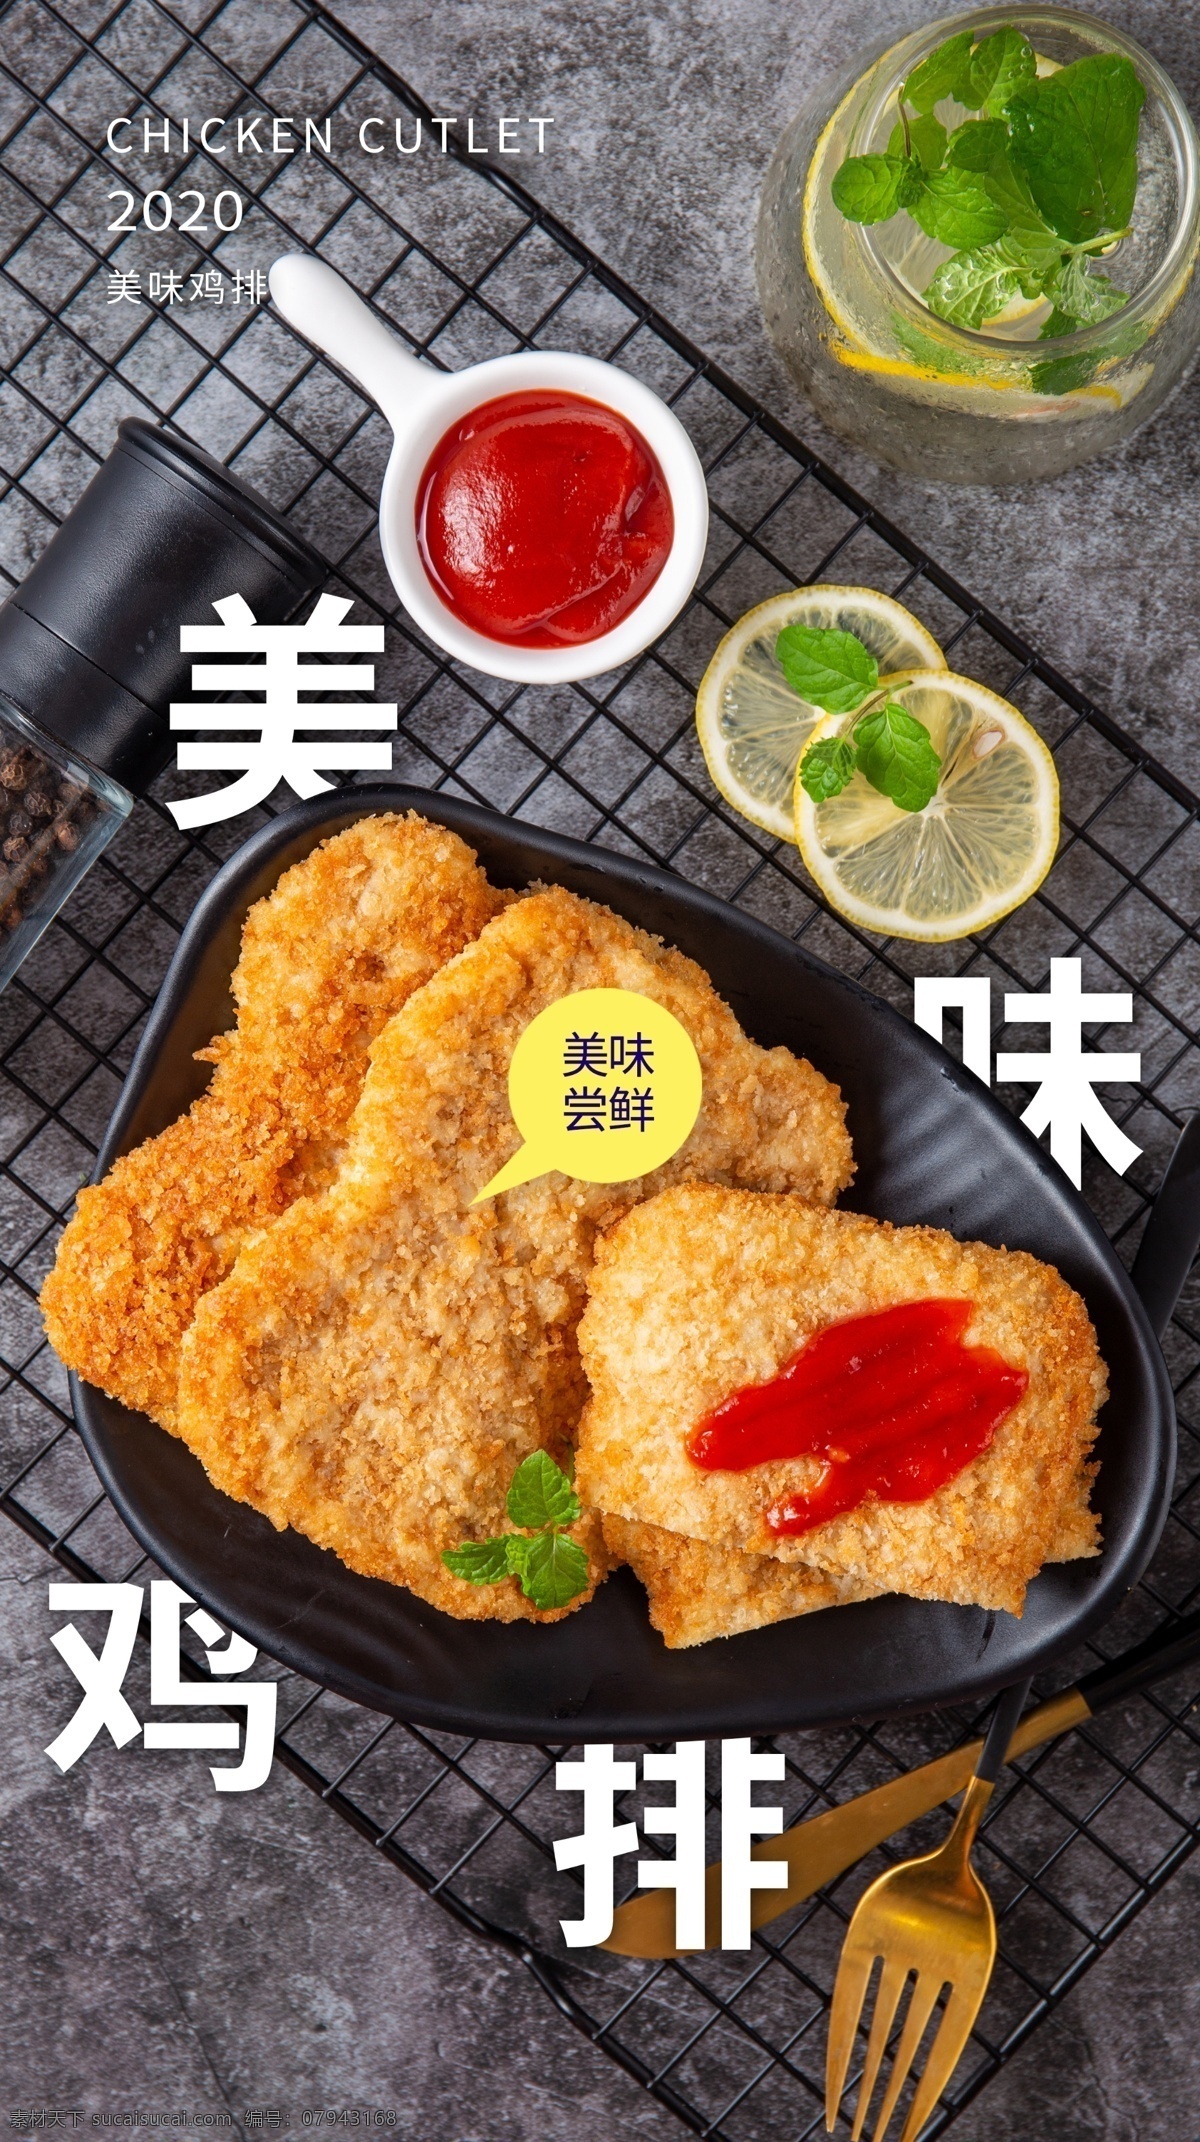 美味 鸡 排 美食 食 材 活动 海报 素材图片 美味鸡排 食材 餐饮美食 类